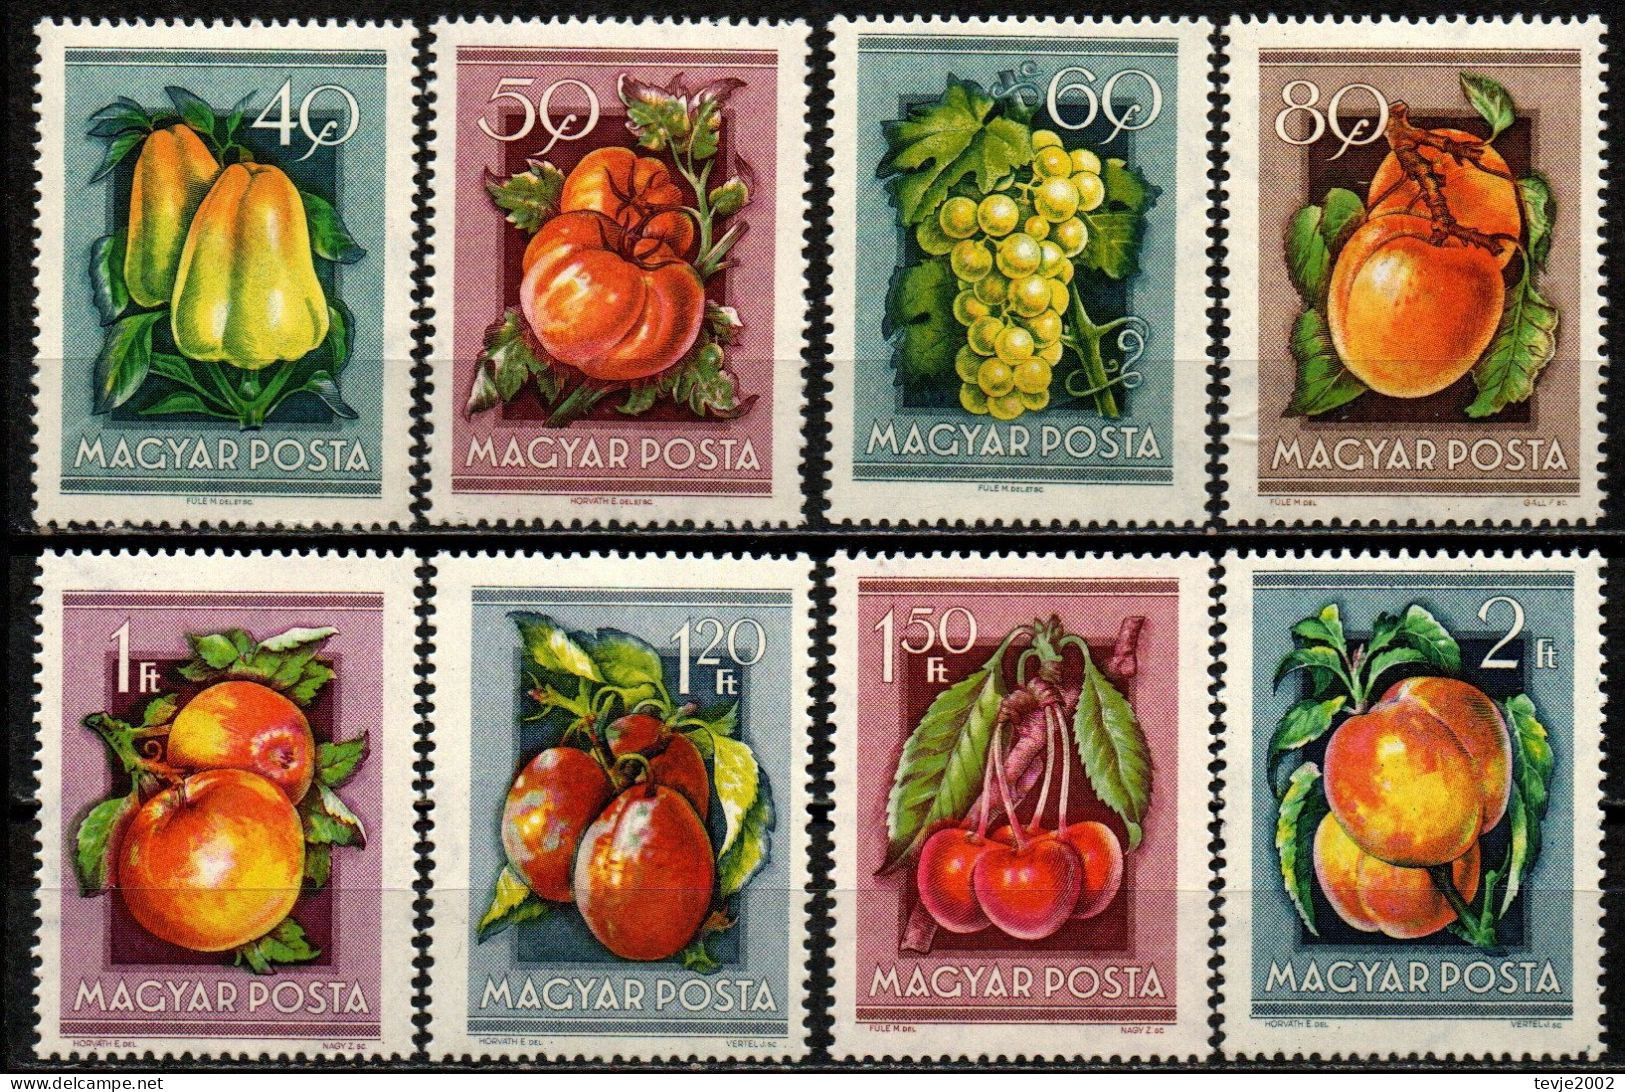 Ungarn 1954 - Mi.Nr. 1387 - 1394 - Postfrisch MNH - Früchte Obst Fruits - Fruits